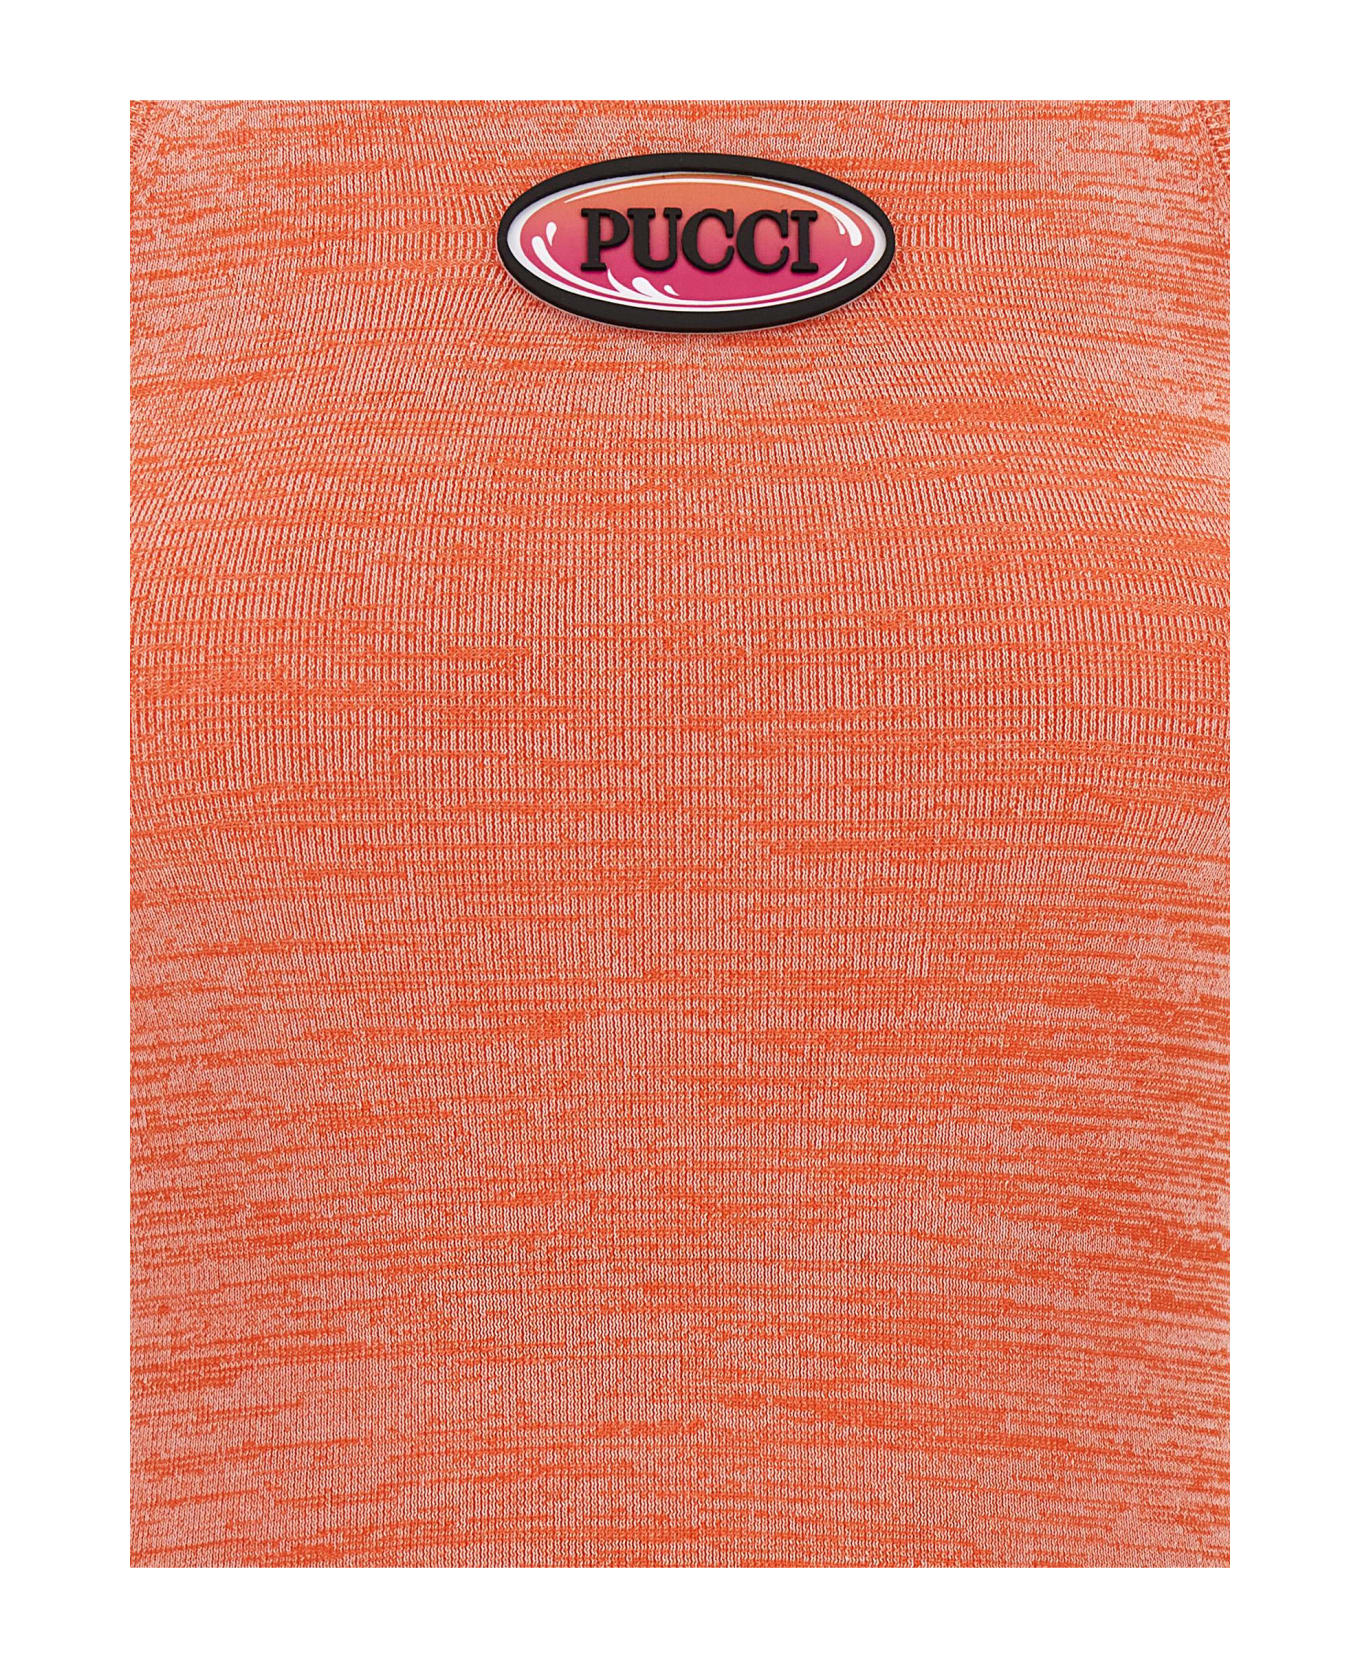 Pucci Logo Top - Pink タンクトップ